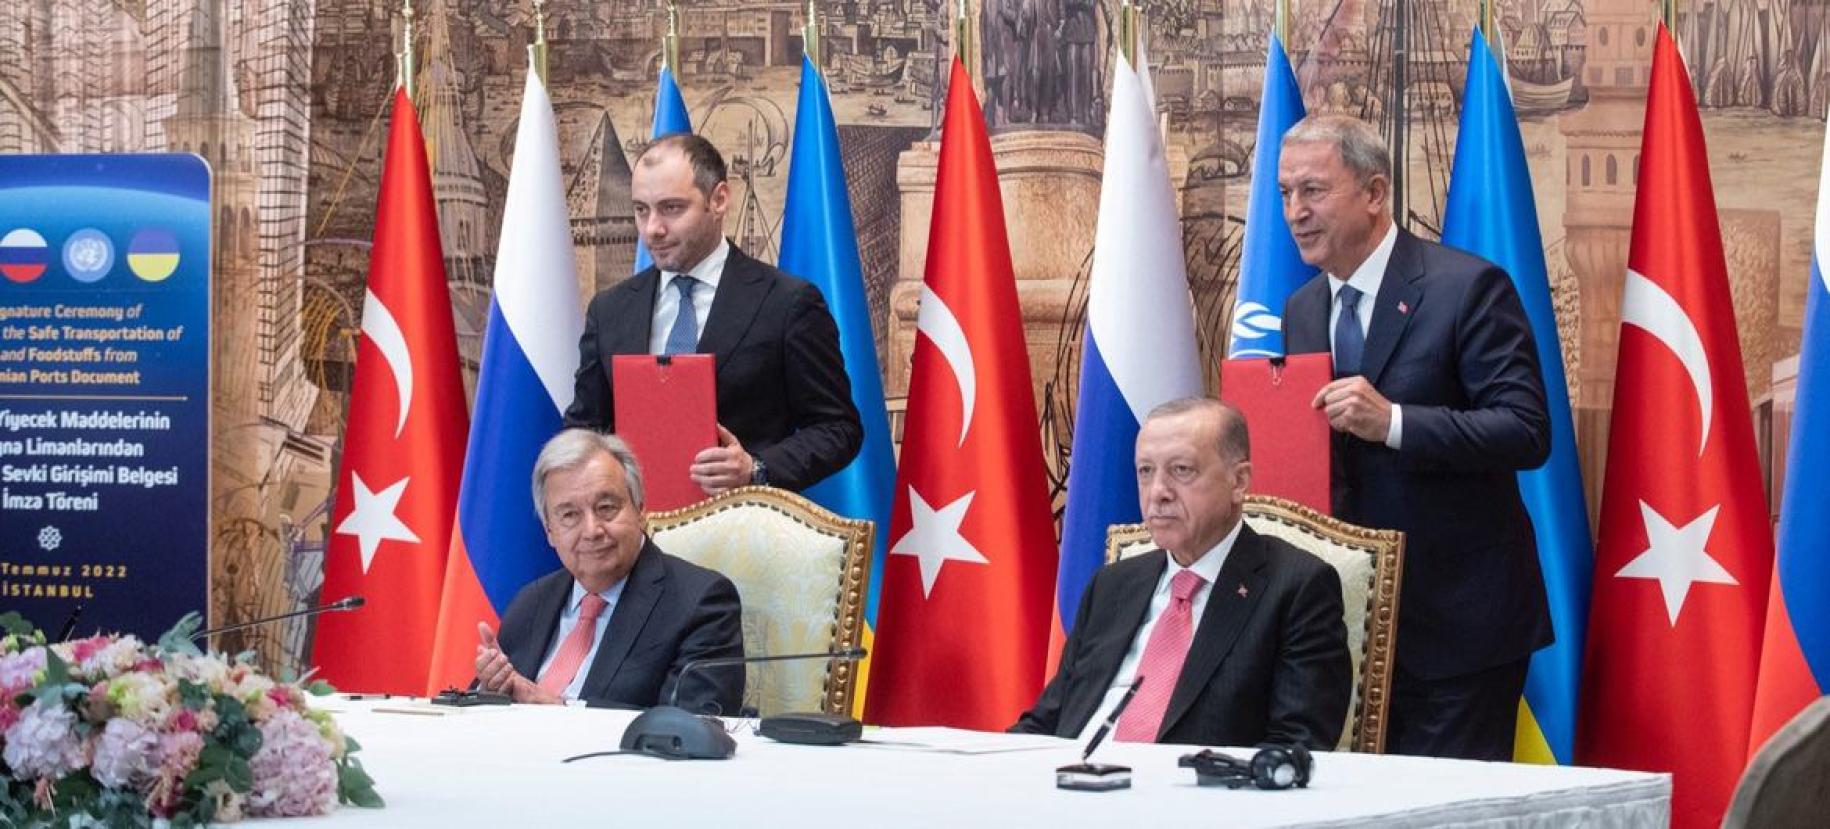 الأمين العام أنطونيو غوتيريش (يسار) والرئيس رجب طيب أردوغان في حفل توقيع مبادرة حبوب البحر الأسود في إسطنبول، تركيا